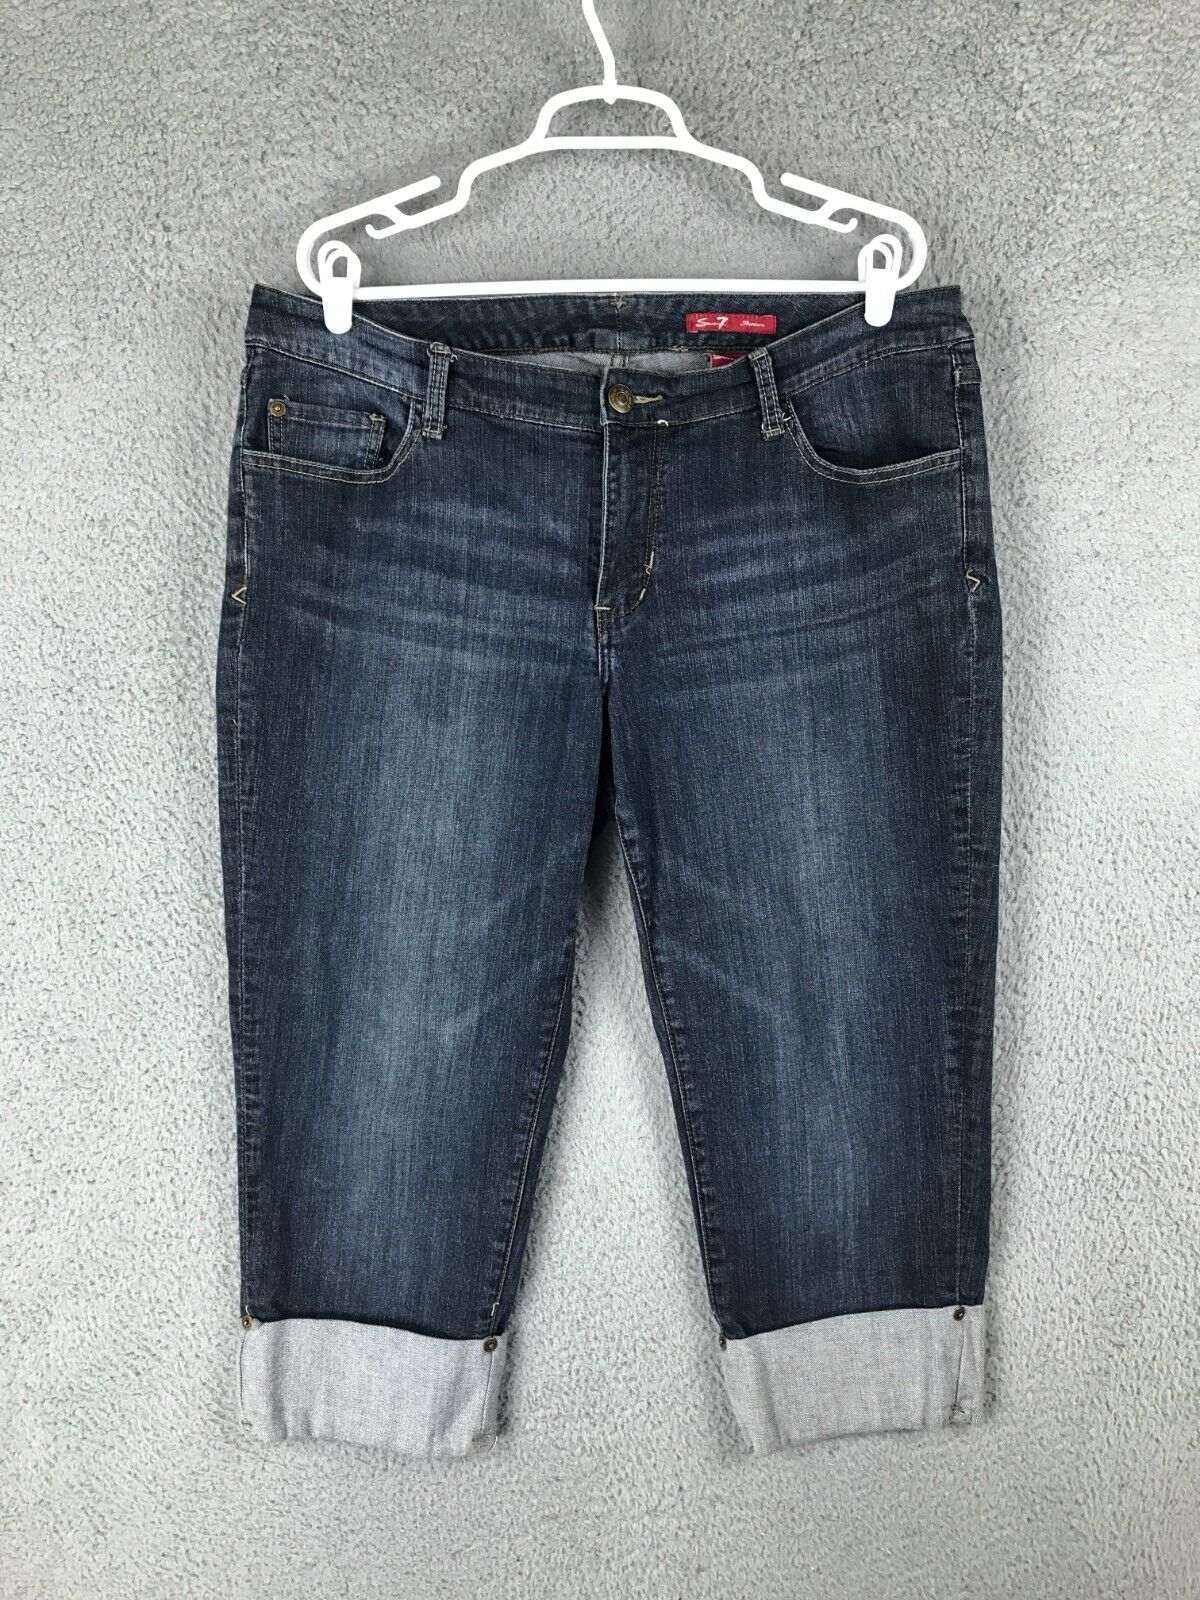 Seven7 Premium Womens Mid Rise Cuffed Capri Stretch Blue Jeans Size 16 38x21